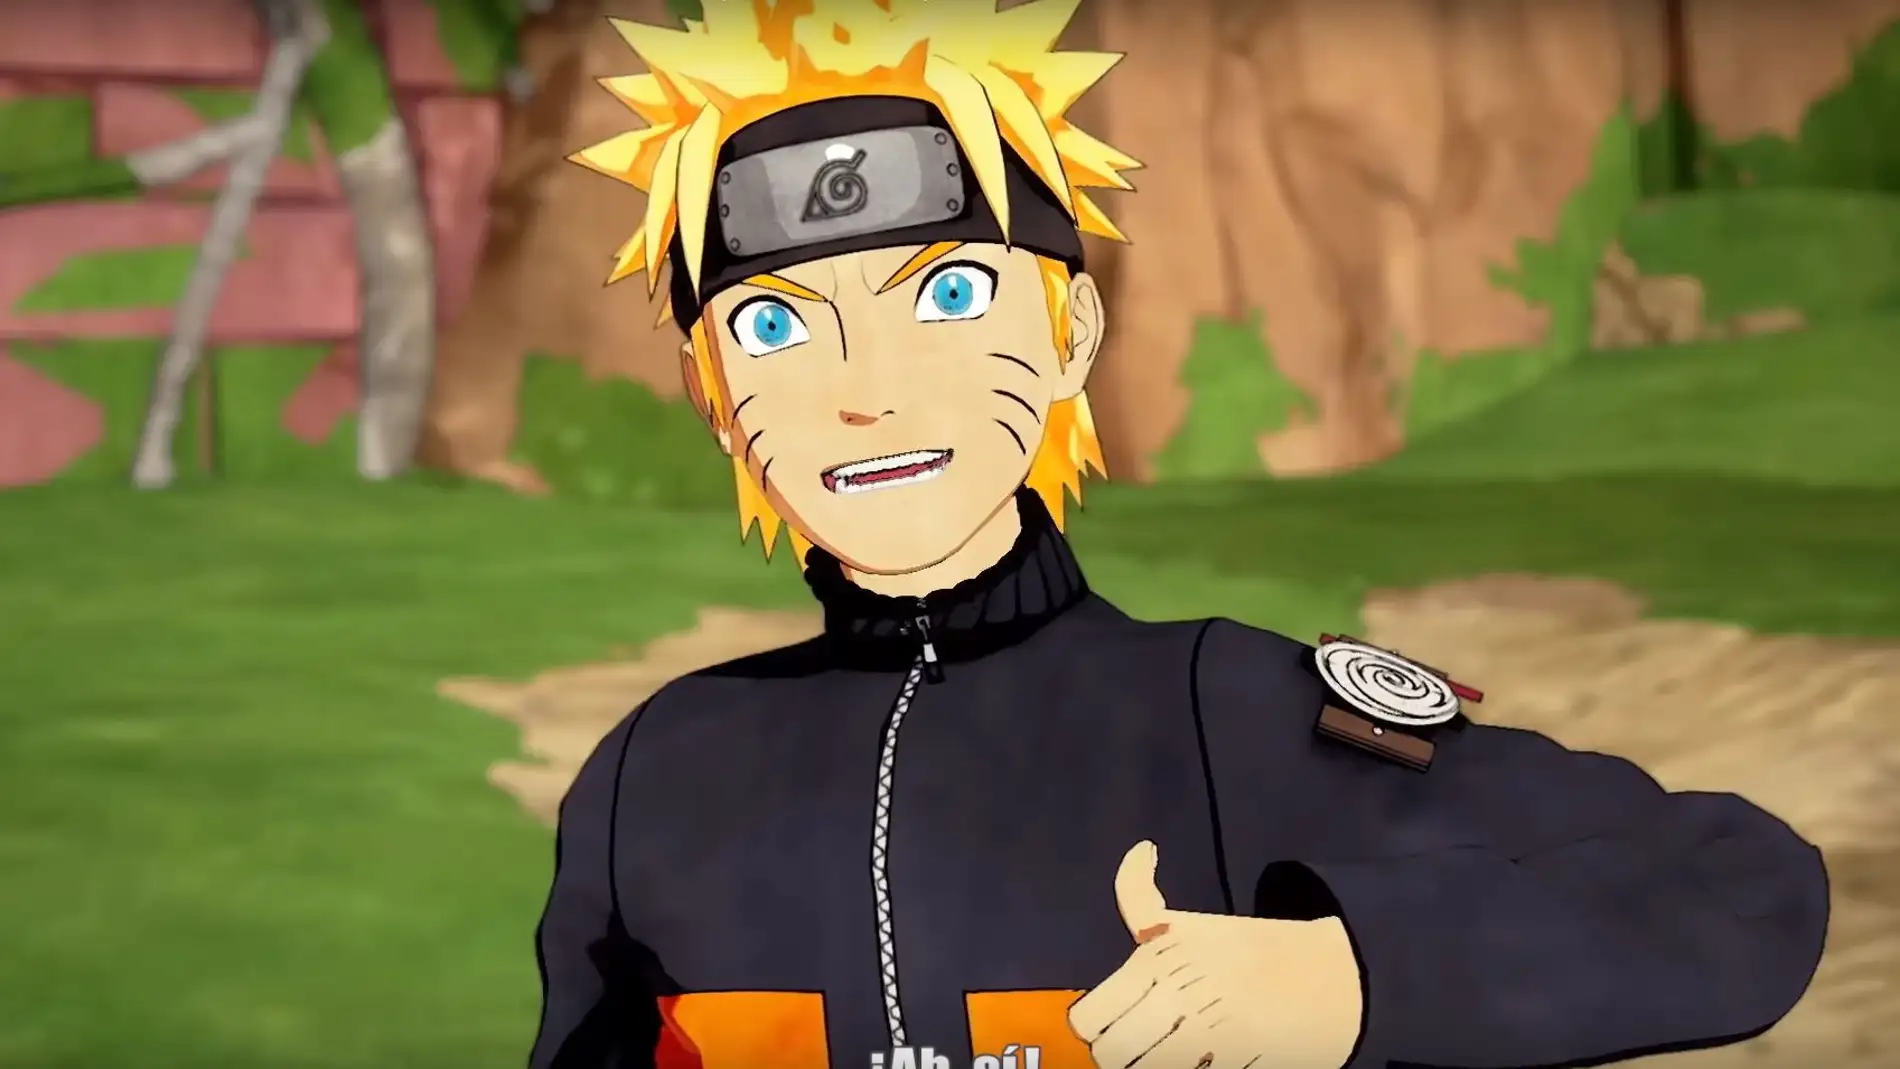 Naruto y sus amigos están disponibles en Fortnite, te podrás convertir en  el mejor Hokage